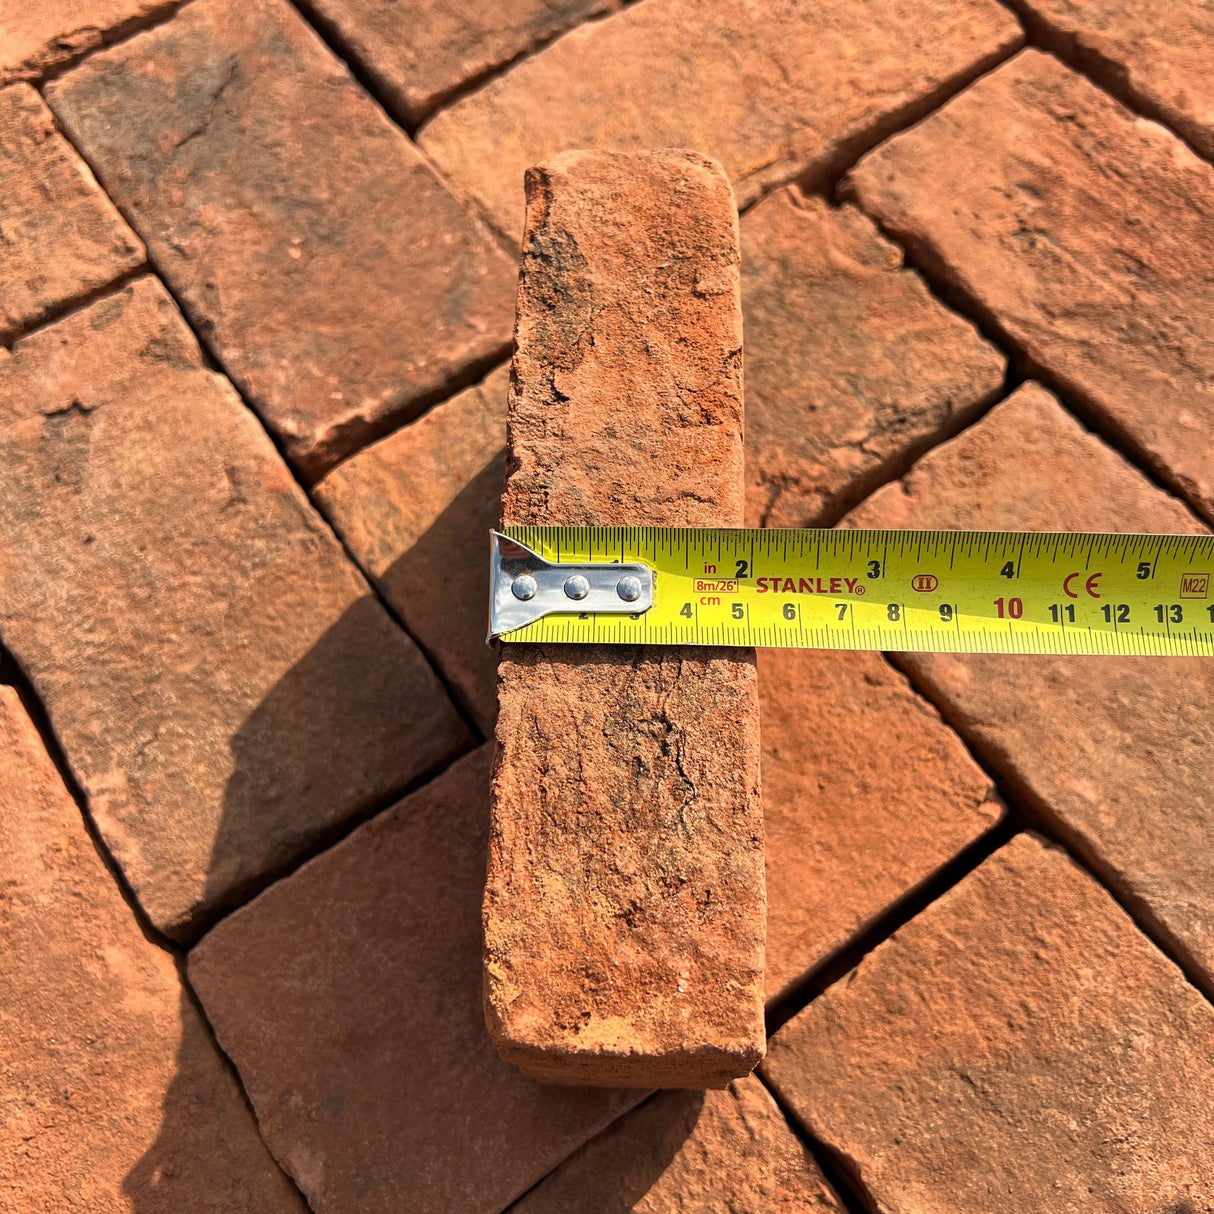 Handmade Clay Paving Brick - Type 1 - Reclaimed Brick Company